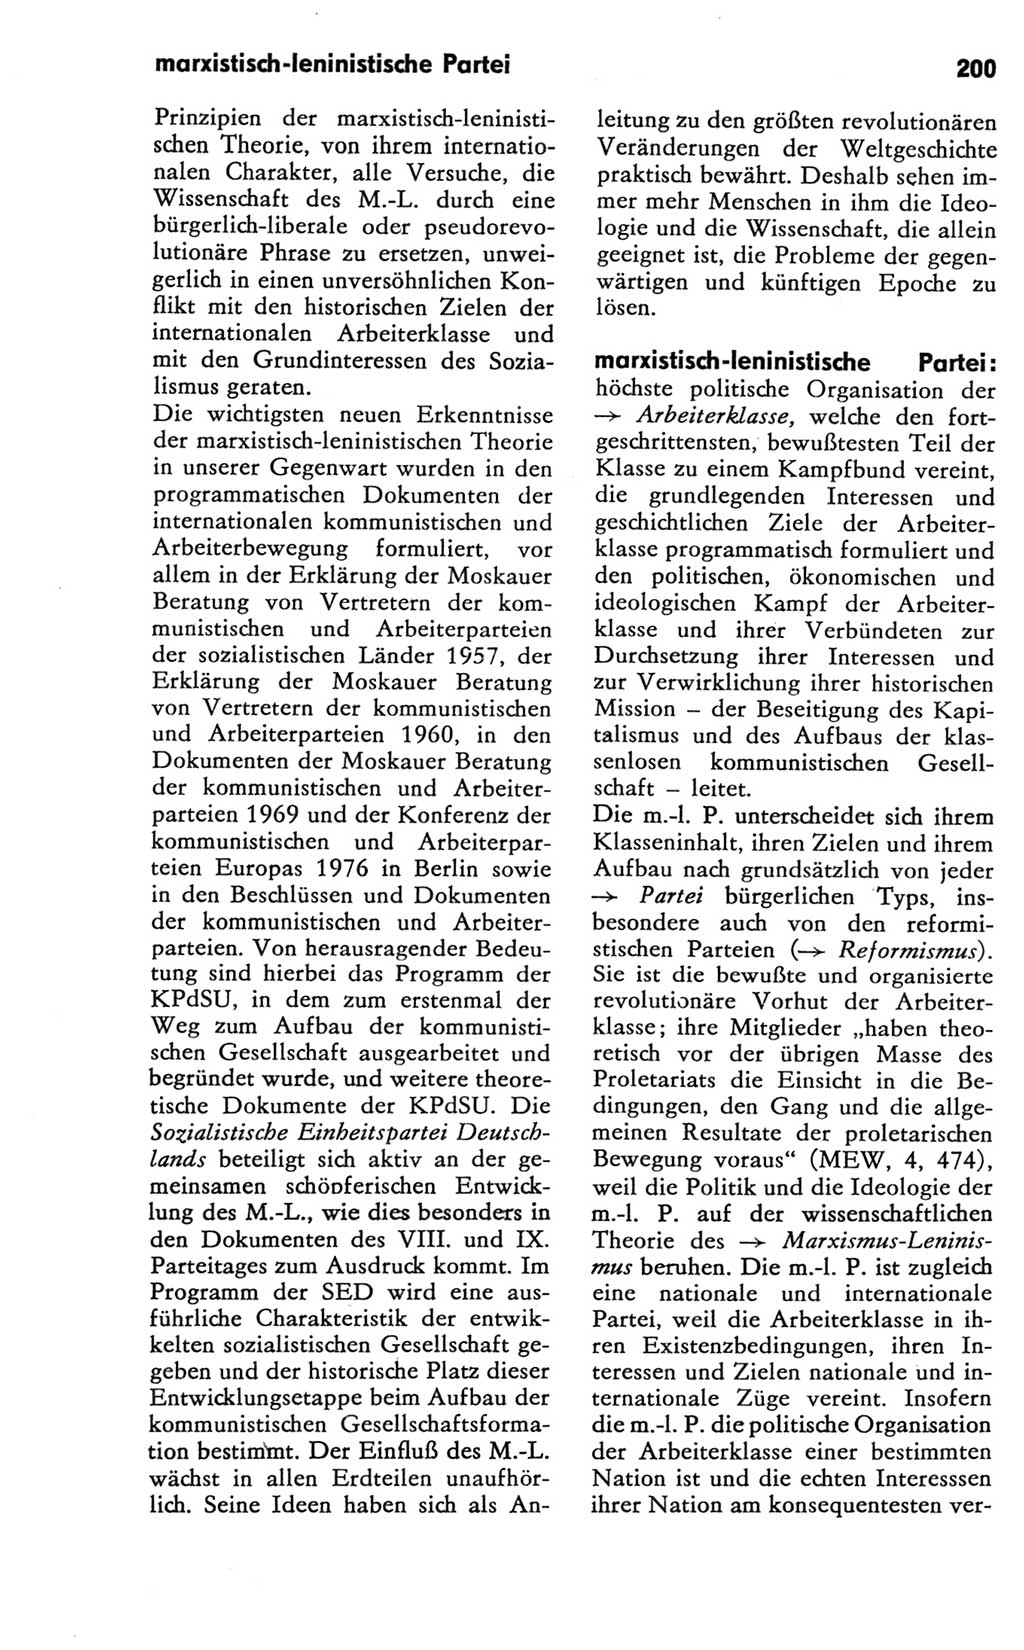 Kleines Wörterbuch der marxistisch-leninistischen Philosophie [Deutsche Demokratische Republik (DDR)] 1981, Seite 200 (Kl. Wb. ML Phil. DDR 1981, S. 200)